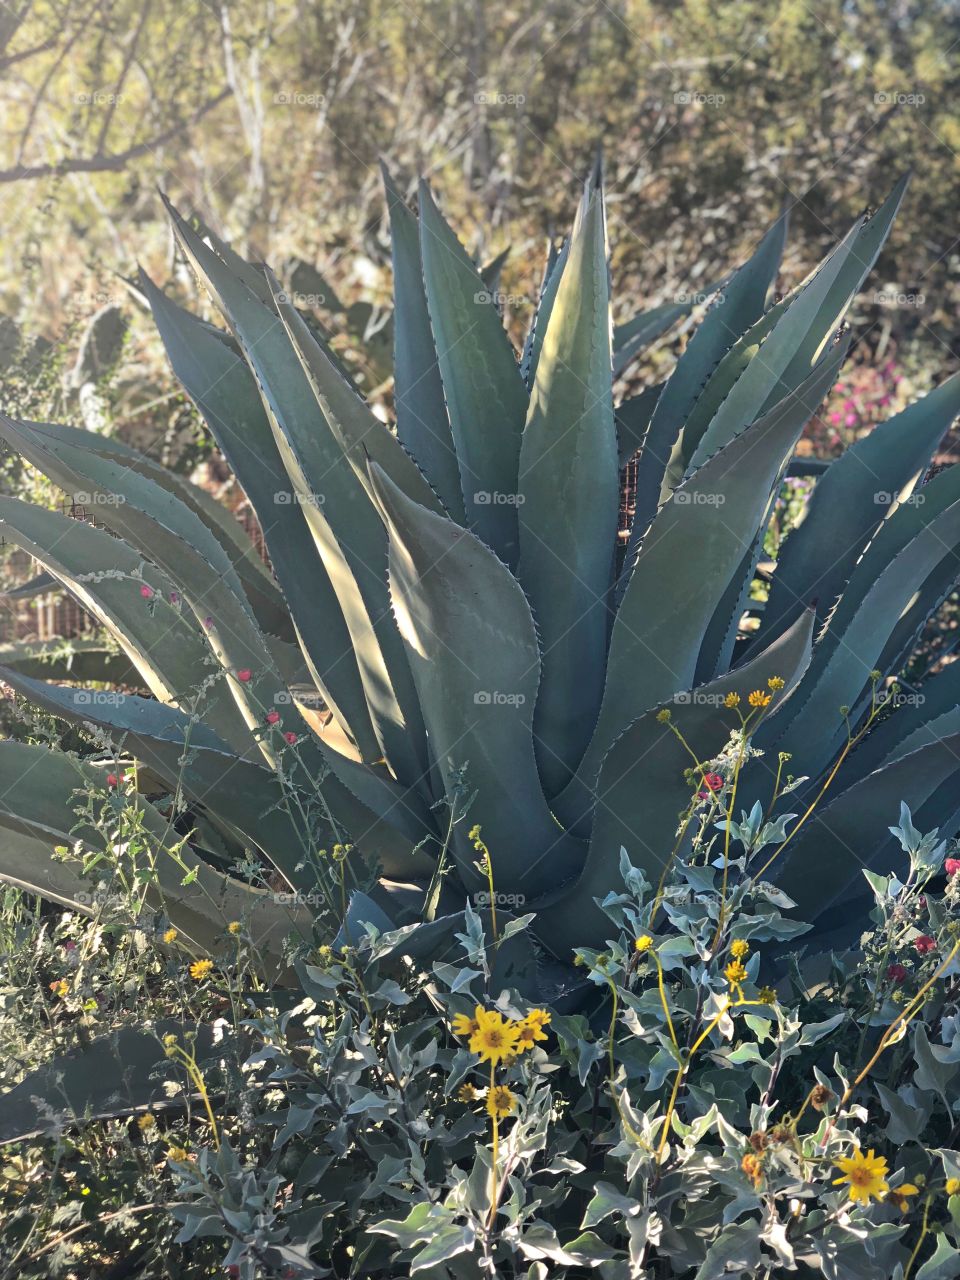 Cactus desert 